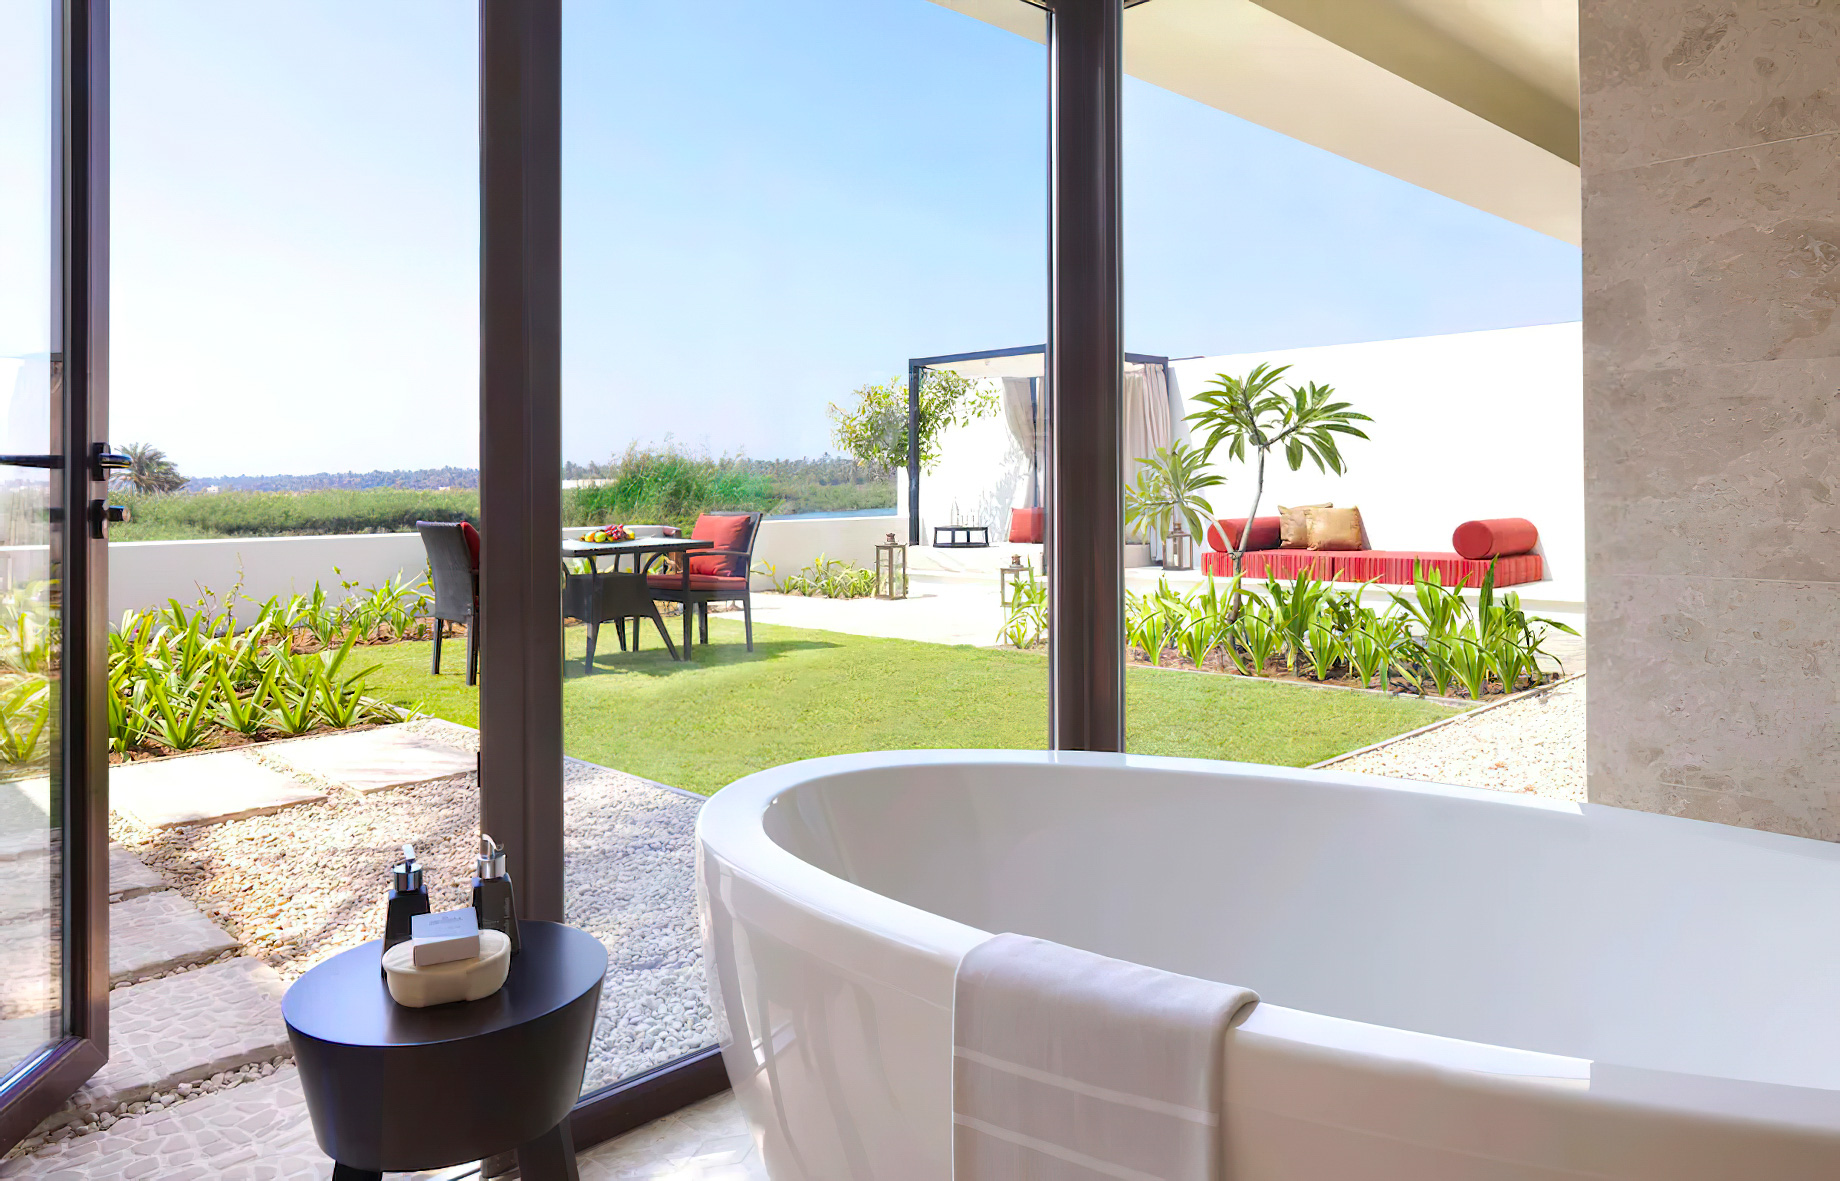 Al Baleed Resort Salalah by Anantara – Oman – One Bedroom Lagoon View Villa Bathroom